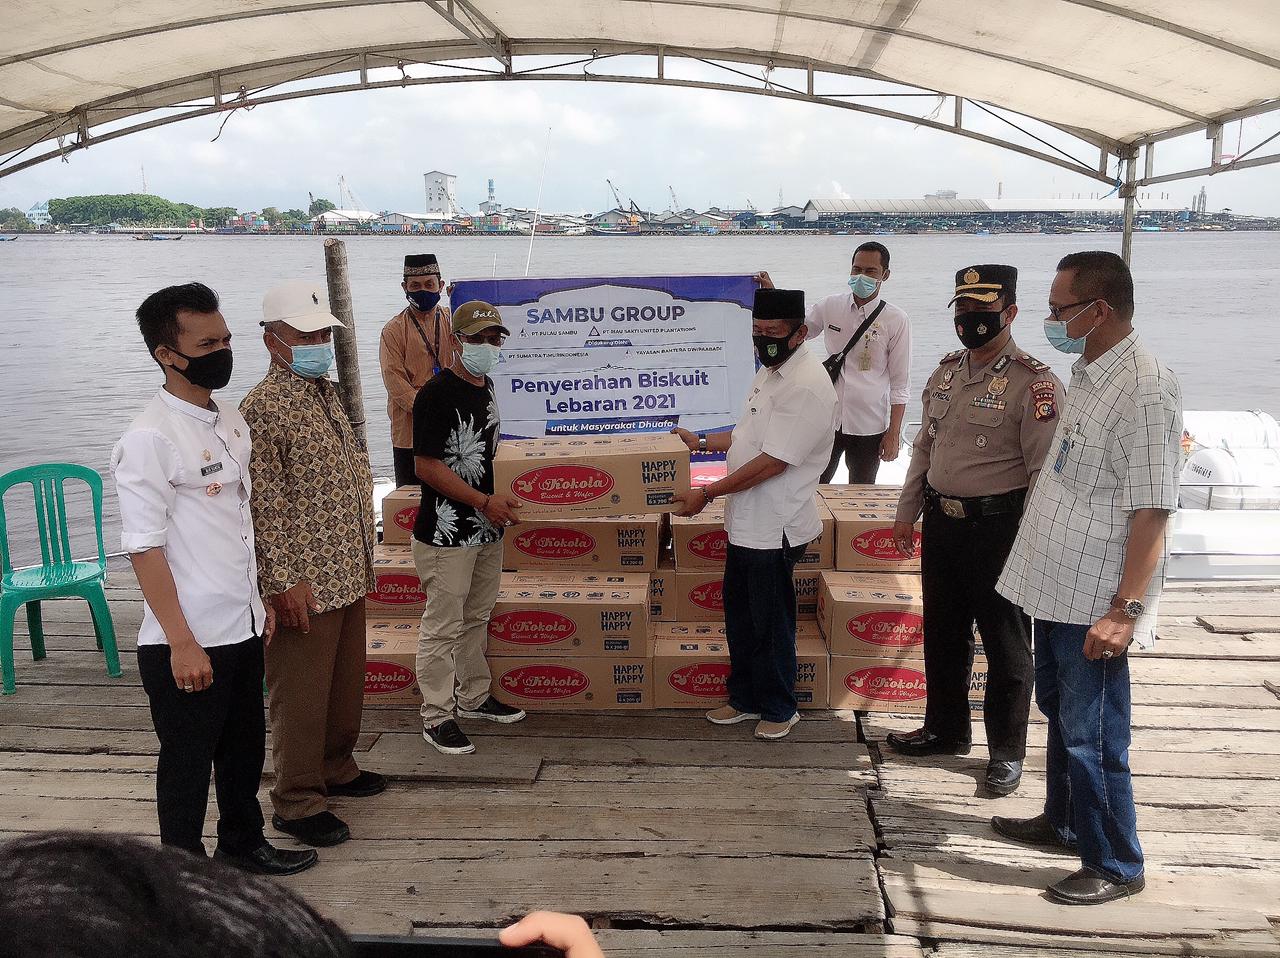 Biskuit Lebaran untuk Kateman, Sambu Group Berbagi Berkah Ramadhan